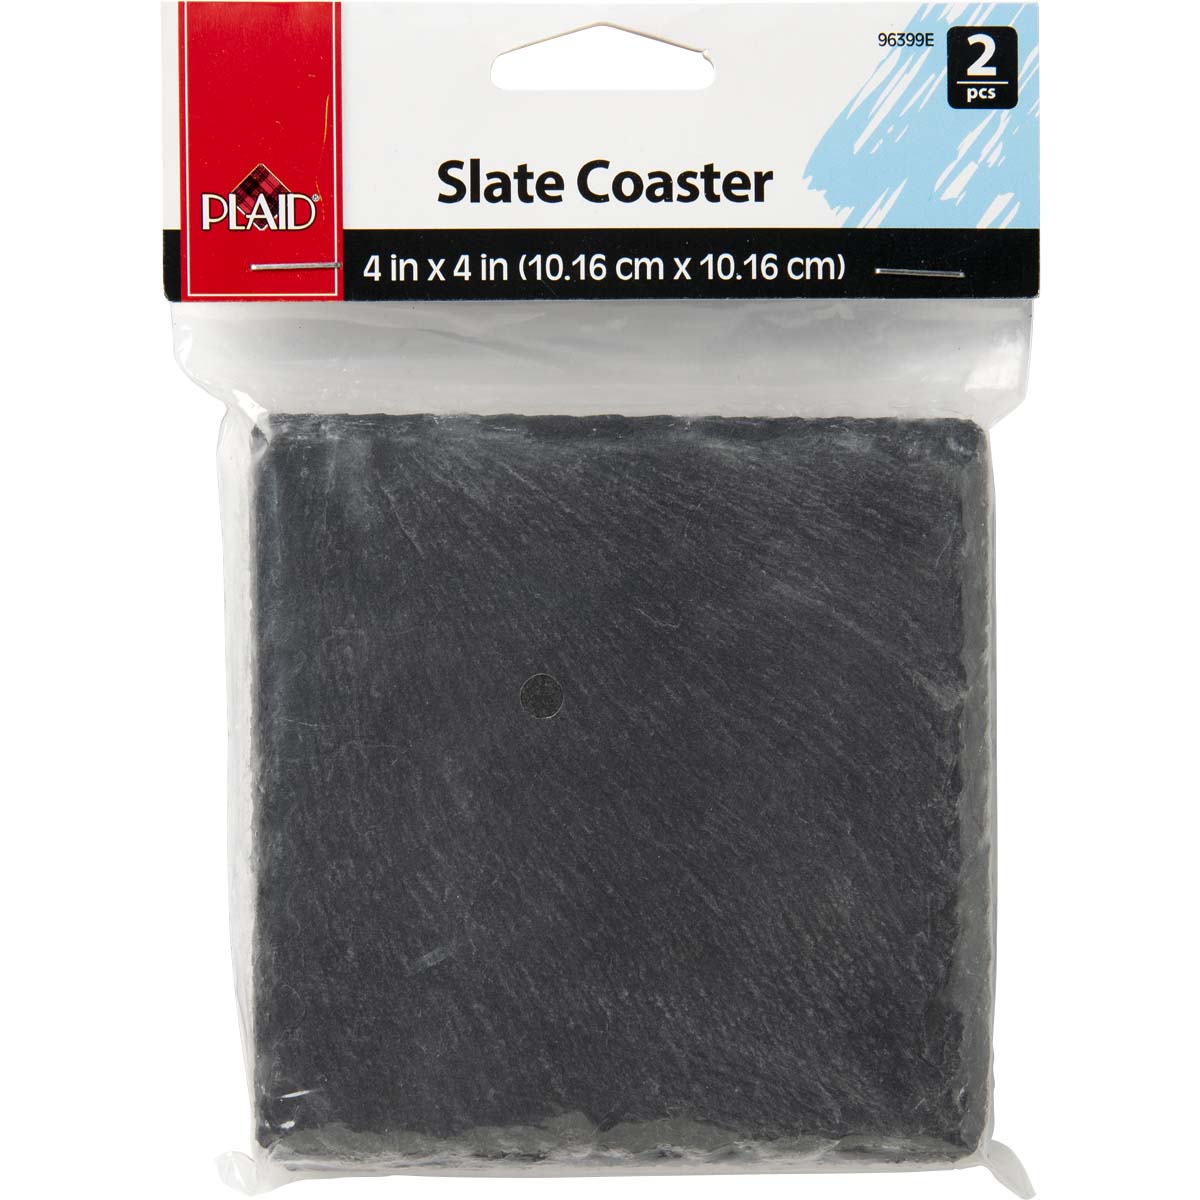 Plaid ® Surfaces - Slate Coasters, 2 pc. - 96399E